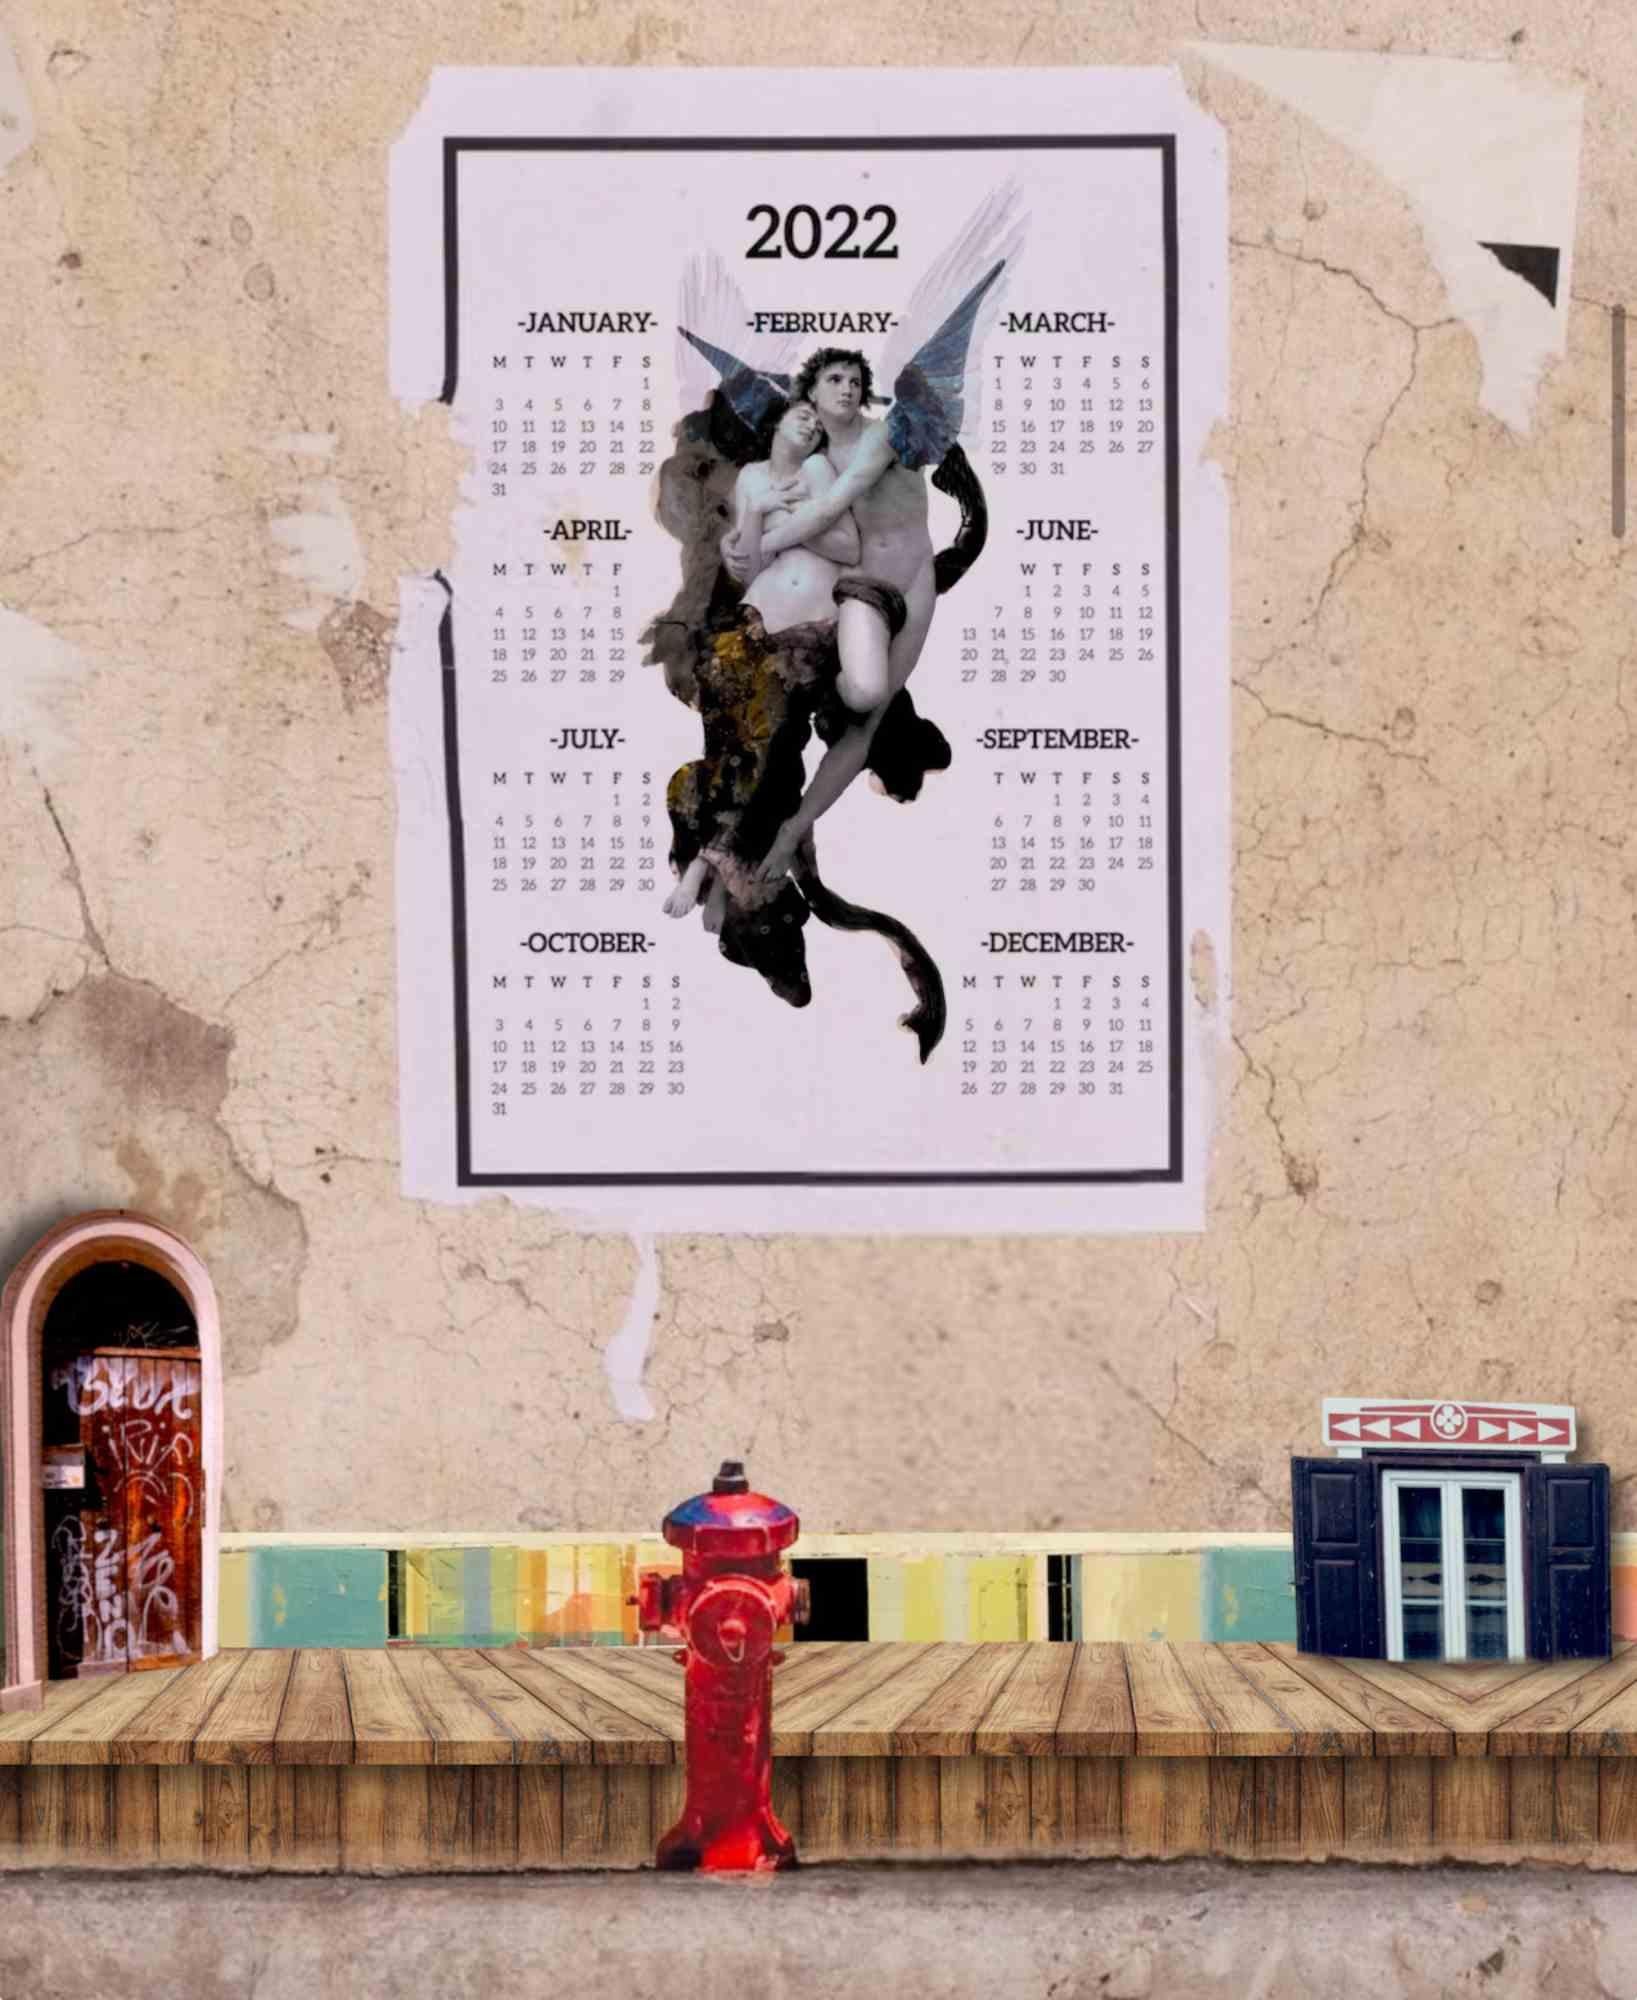 2022 est une belle impression sur toile d'un collage numérique réalisé en 2022 par l'artiste italienne Chiara Santoro.

Édition de 10 exemplaires. Signé et numéroté à la main.